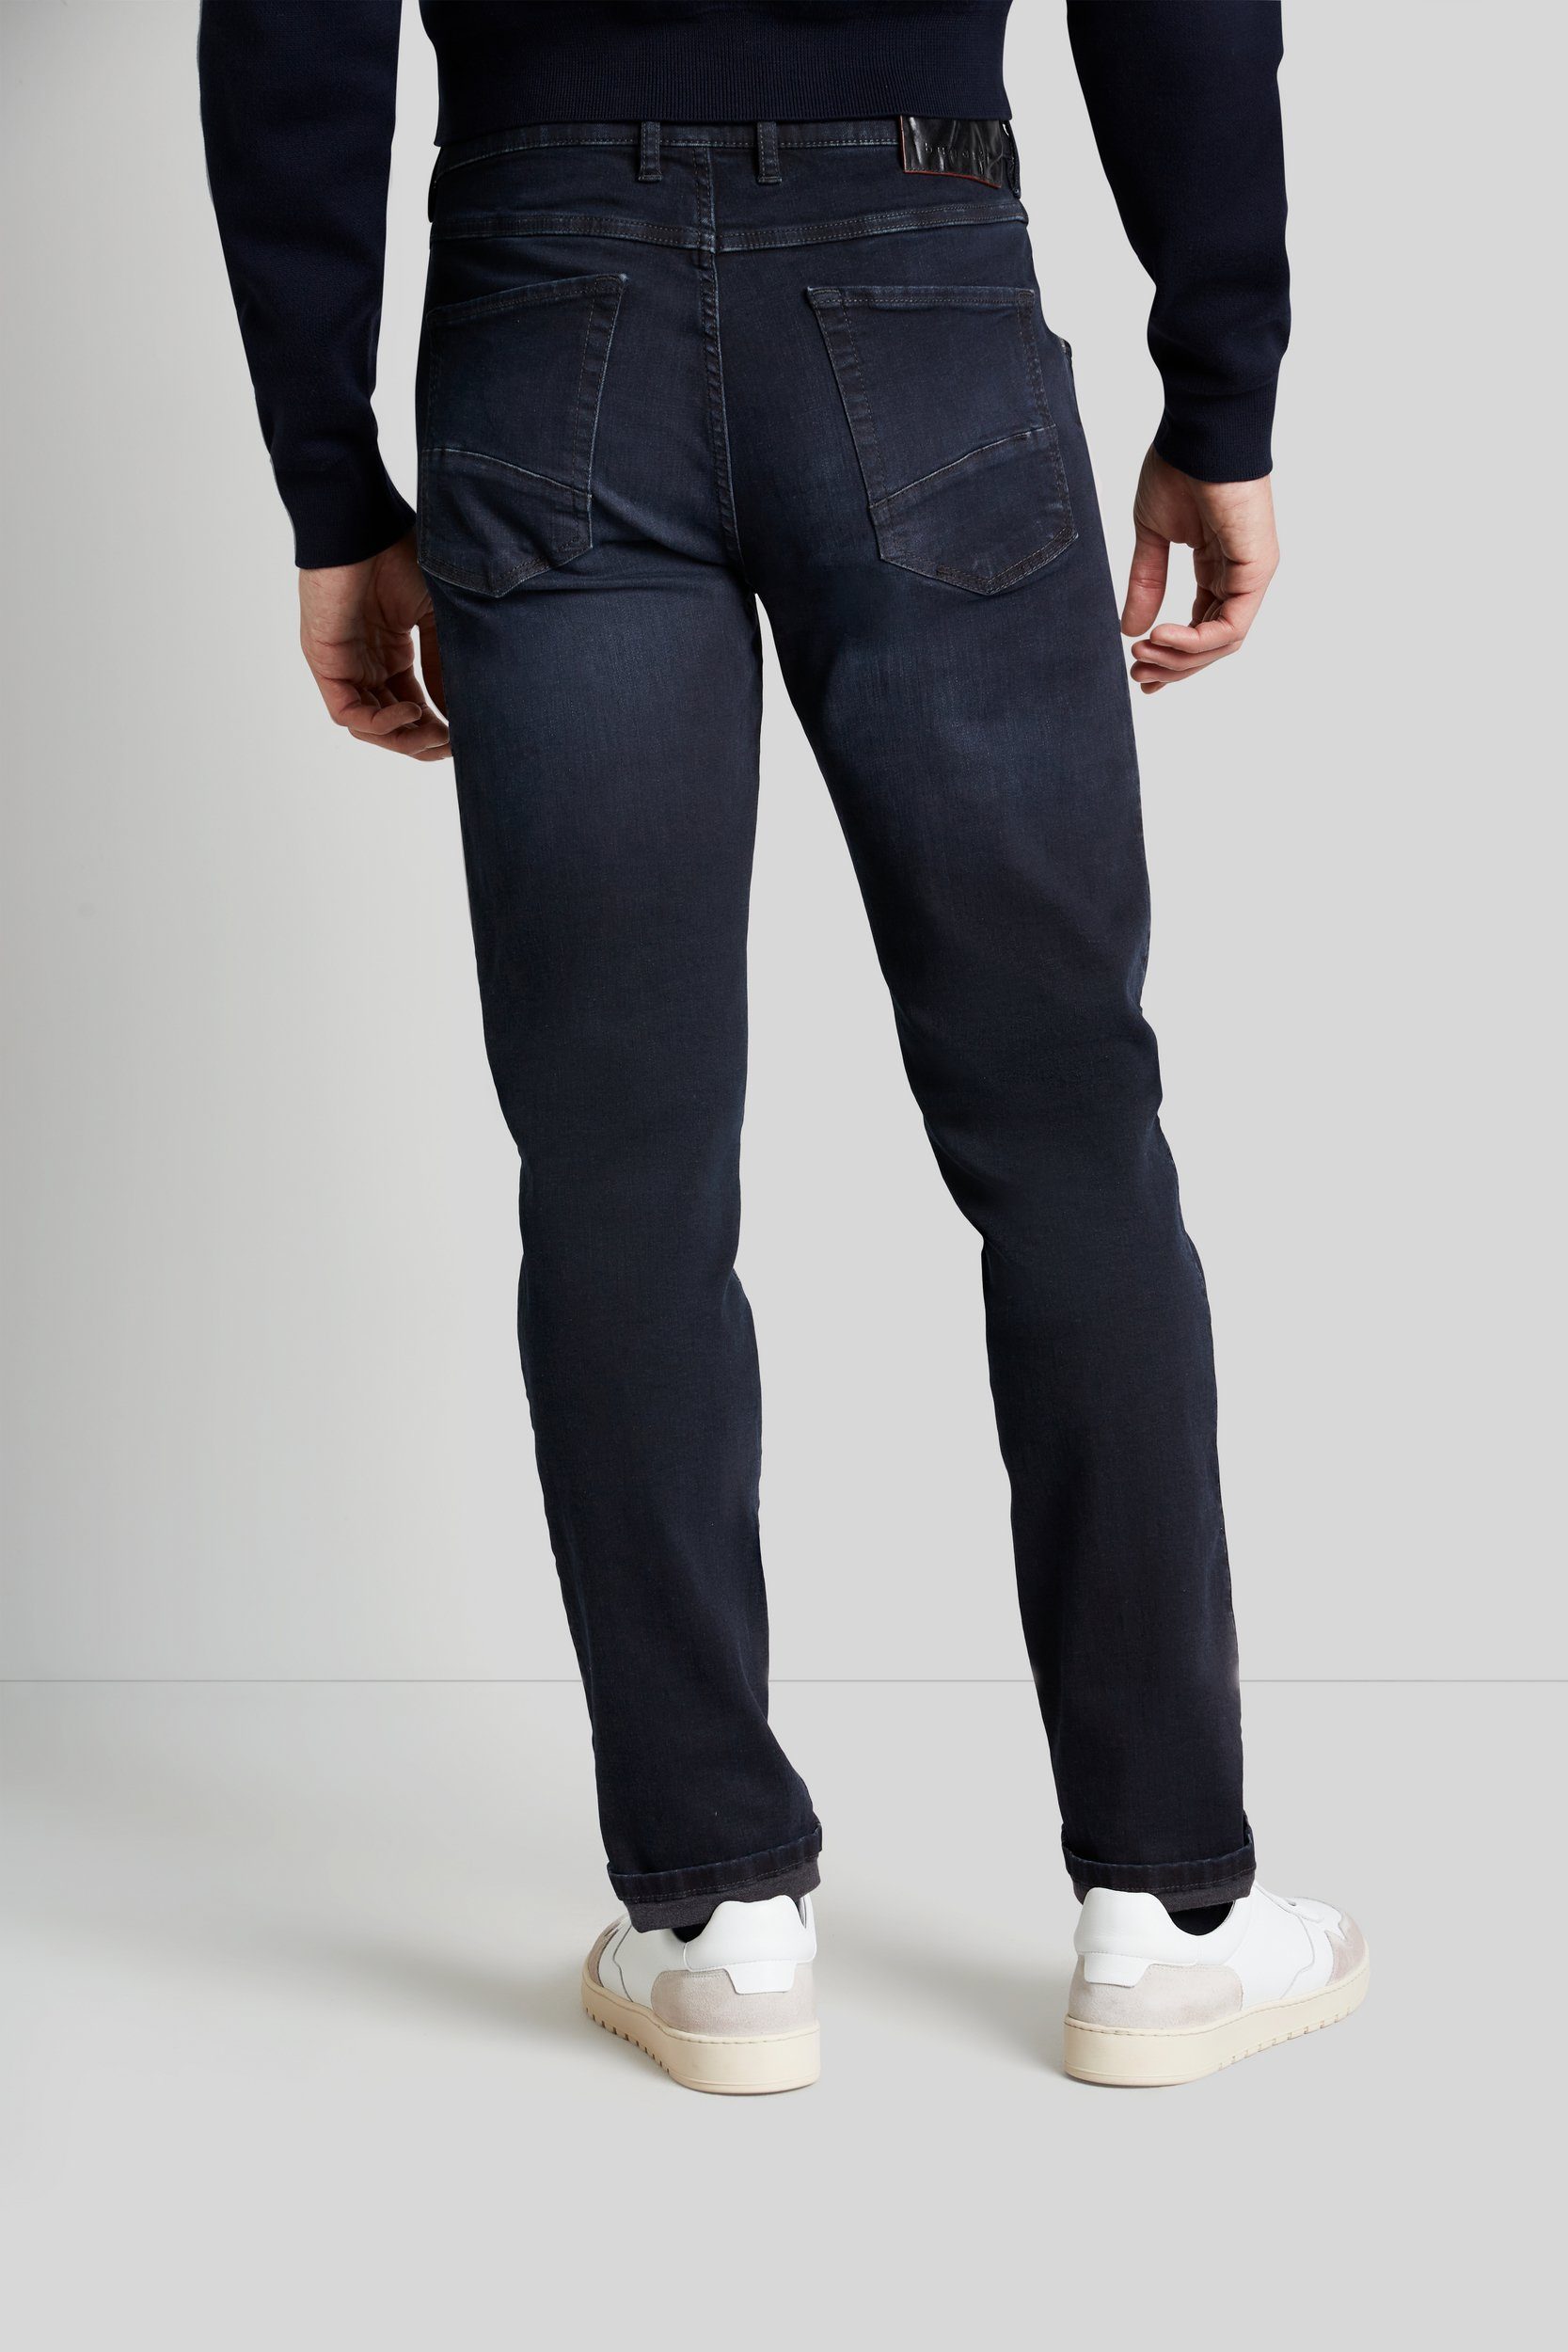 Denim Flexcity mit bugatti hohem dunkelblau 5-Pocket-Jeans Tragekomfort